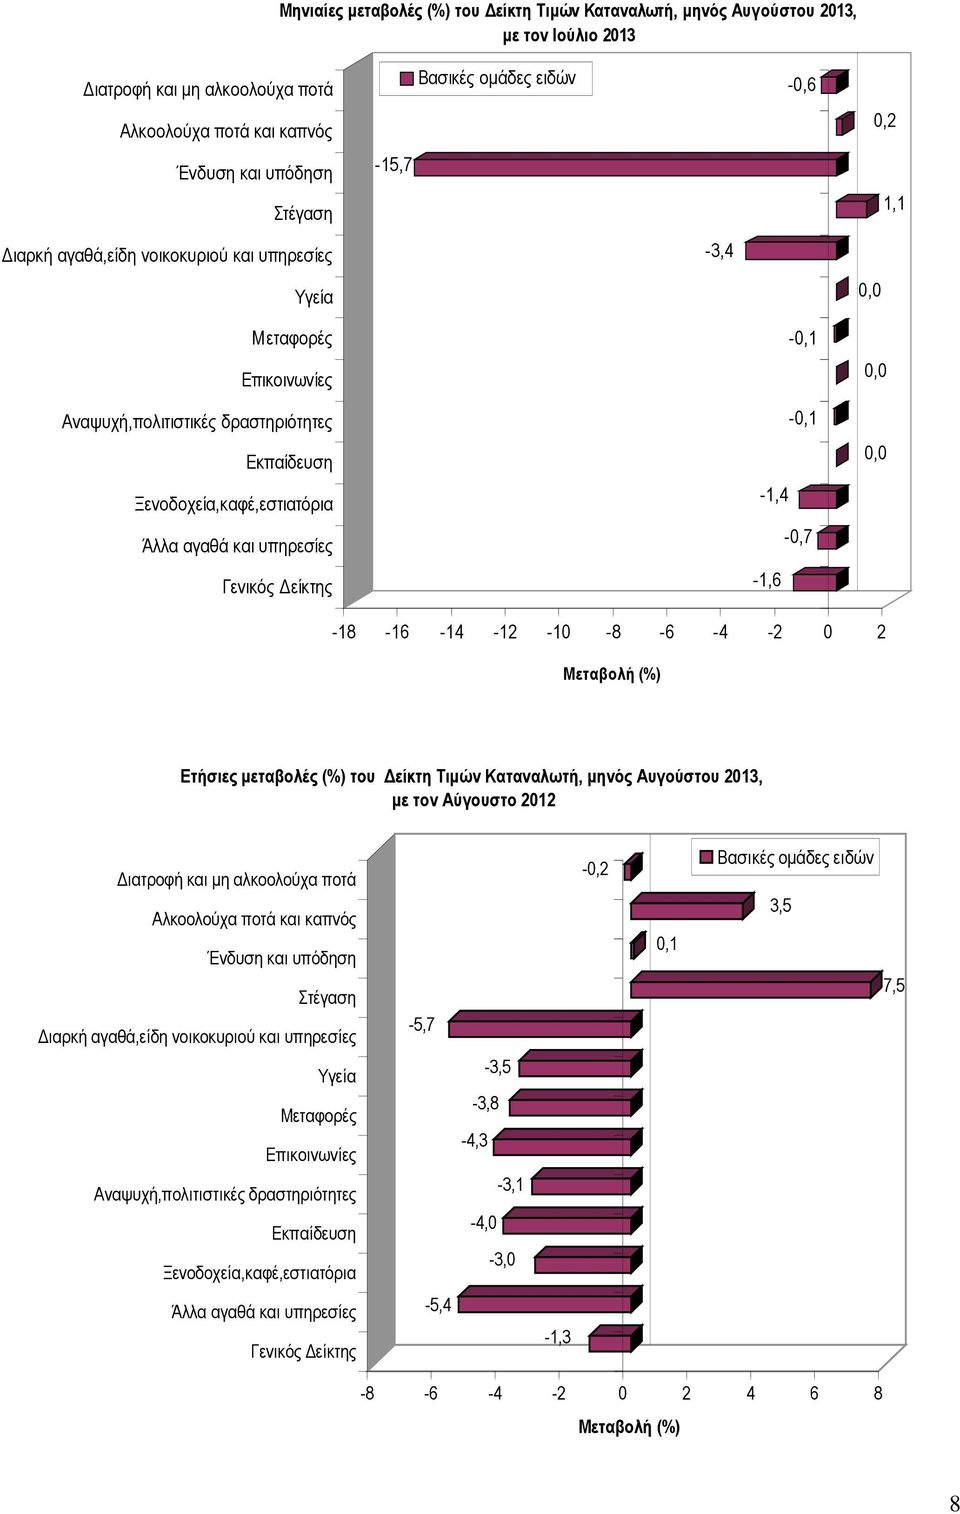 Άλλα αγαθά και υπηρεσίες -0,7 Γενικός είκτης -1,6-18 -16-14 -12-10 -8-6 -4-2 0 2 Μεταβολή (%) Ετήσιες µεταβολές (%) του είκτη Τιµών Καταναλωτή, µηνός Αυγούστου 2013, µε τoν Αύγουστο 2012 ιατροφή και